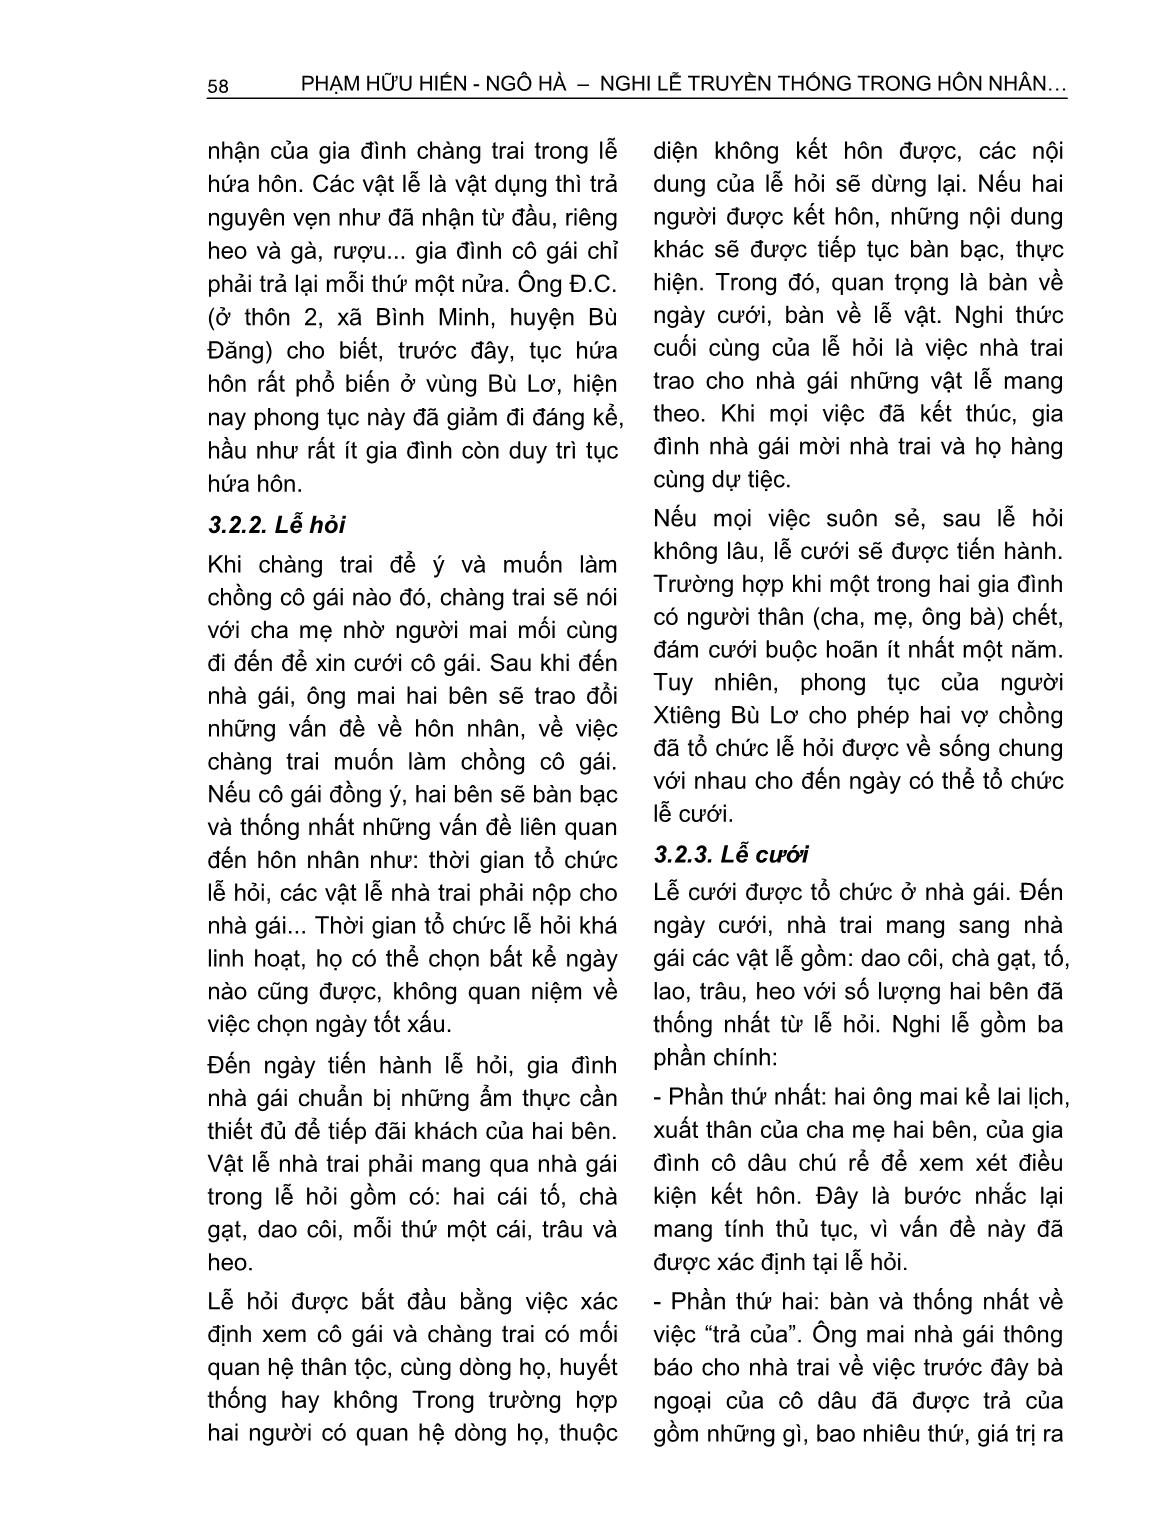 Nghi lễ truyền thống trong hôn nhân của người Xtiêng ở Bình Phước trang 8